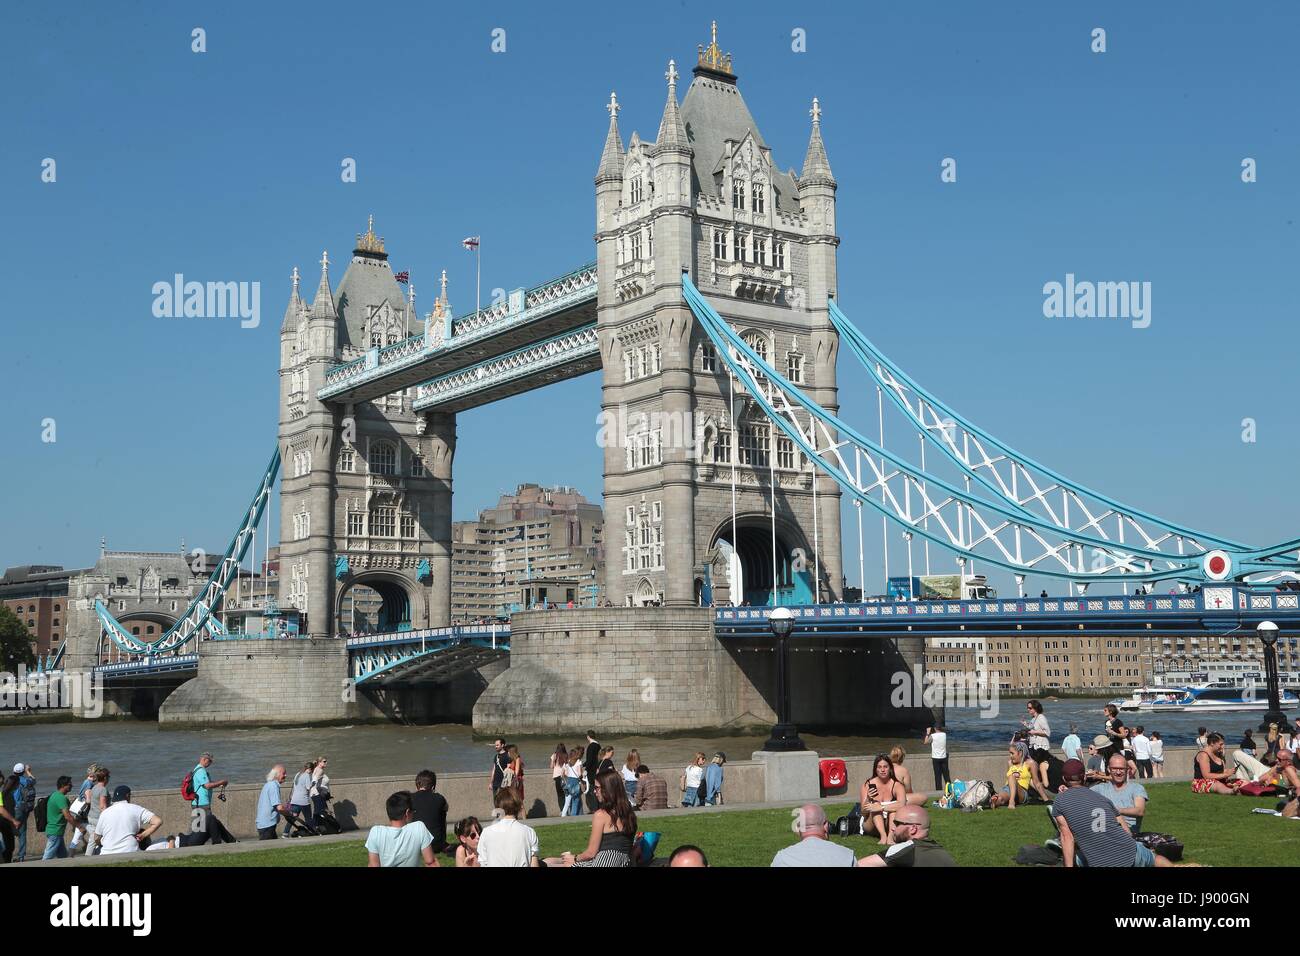 L'emblématique Tower Bridge à Londres, l'un des bâtiments les plus célèbres dans le monde qui a été construit plus de 120 ans. Banque D'Images